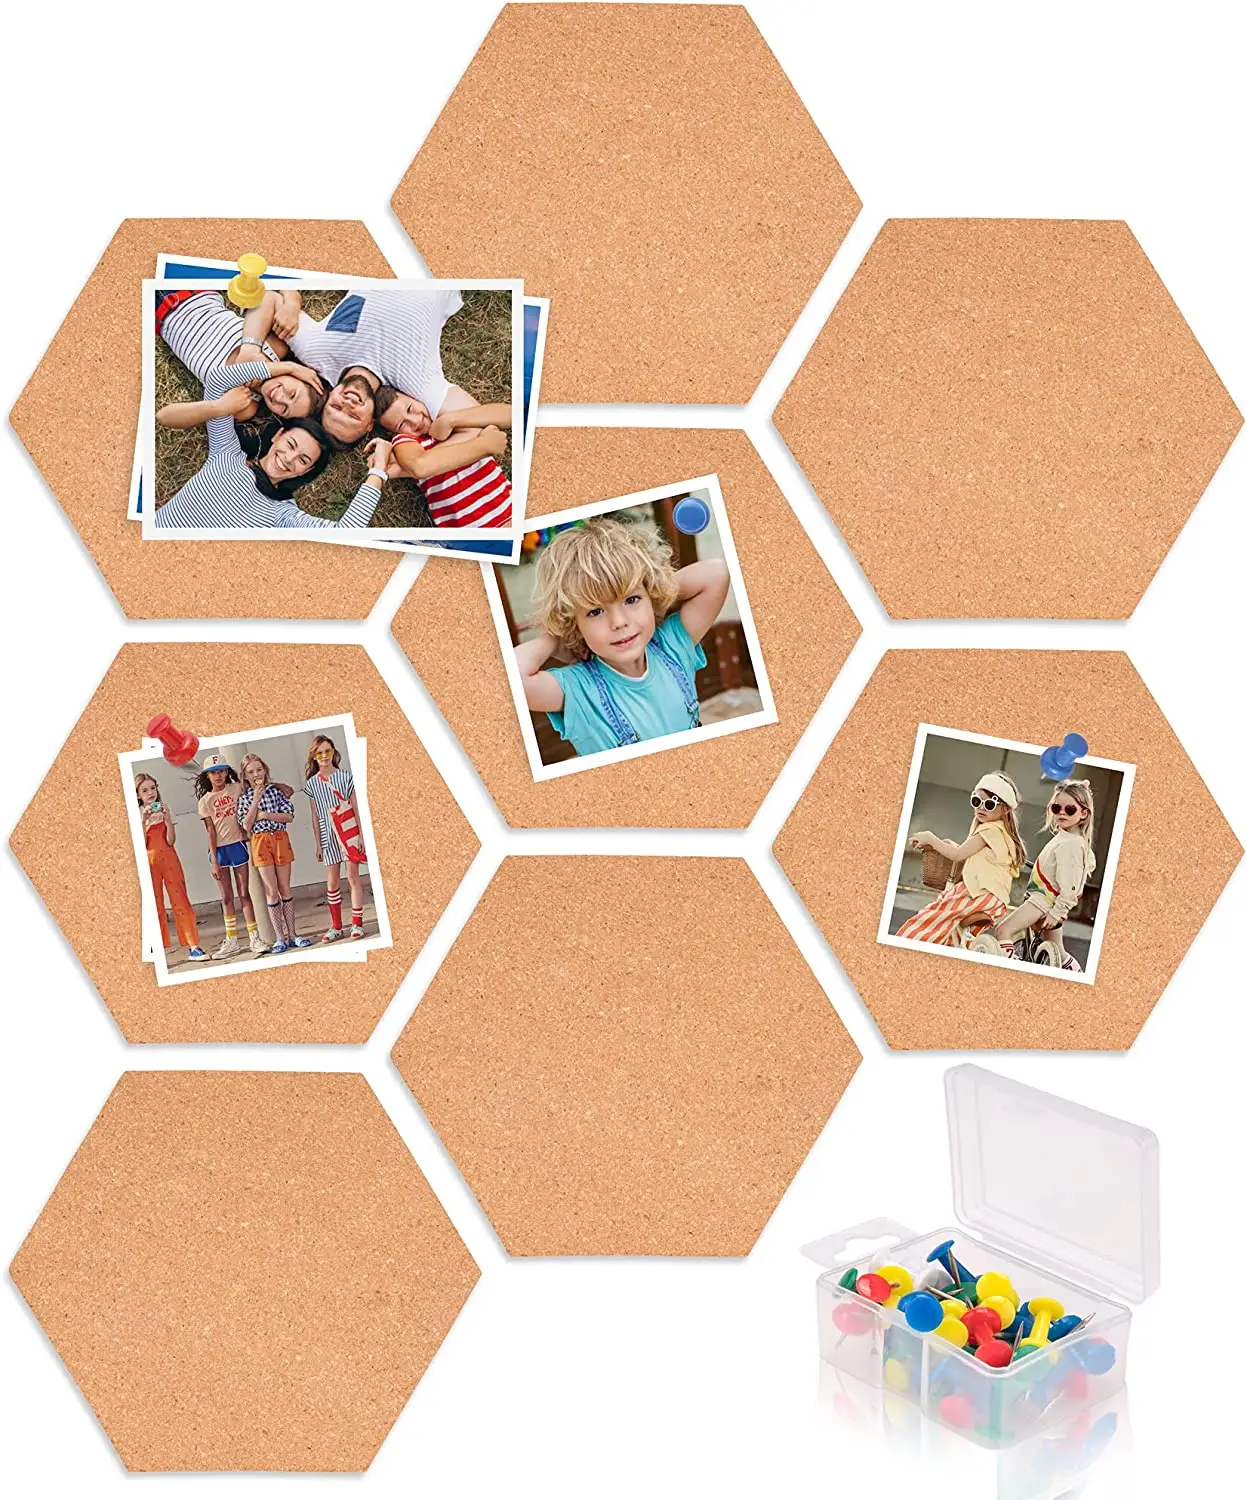 Home Office Classroom Aangepaste Vorm Wandmontage Decoratieve Gekleurde Hexagon Pin Board Prikbord Kurk Boord